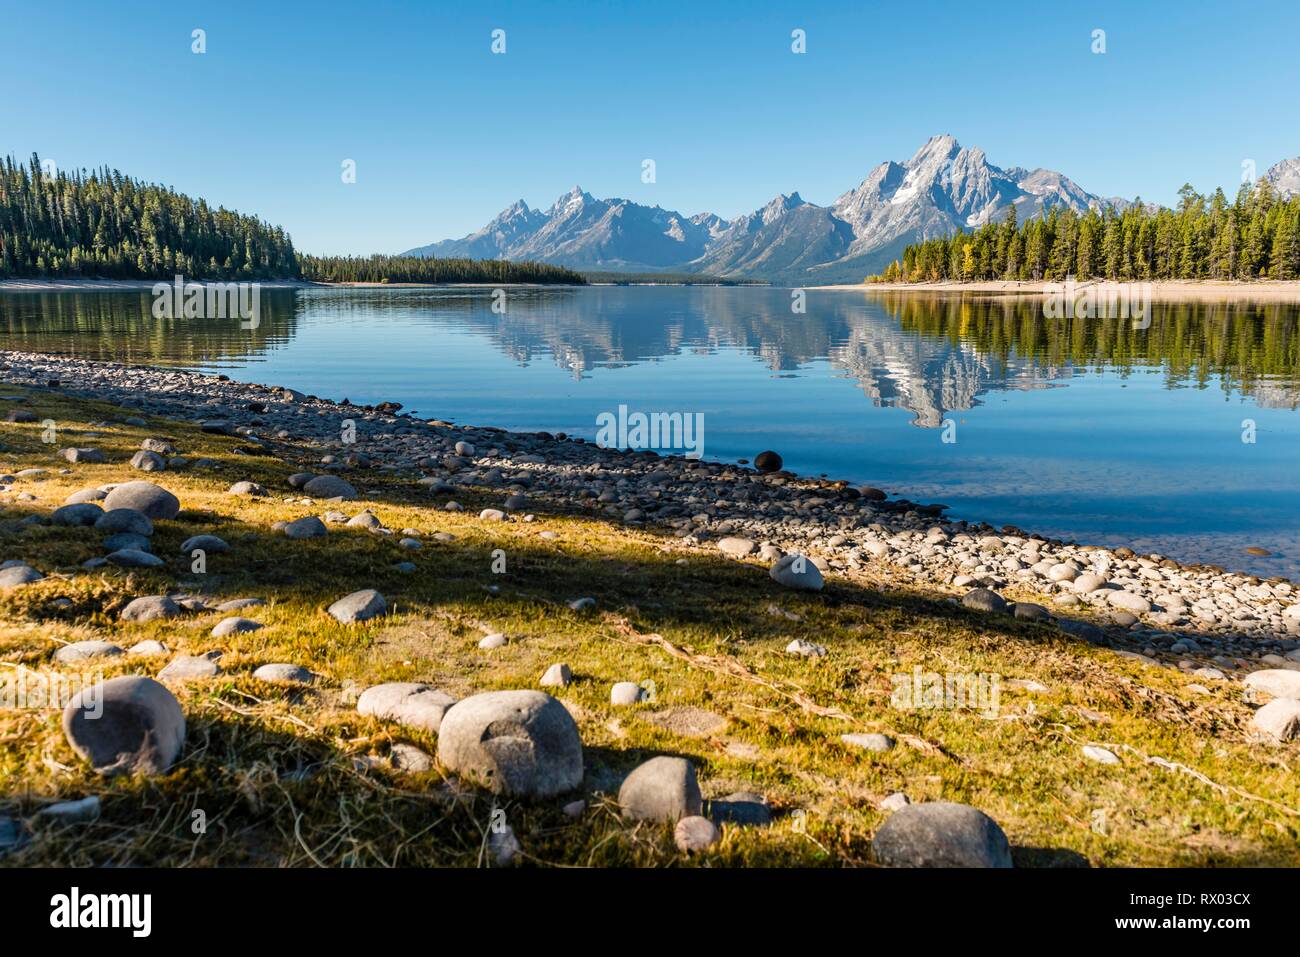 Berge im See spiegeln, Colter Bay Bay, Jackson Lake, Teton Range Bergkette, Grand Teton National Park, Wyoming, USA Stockfoto